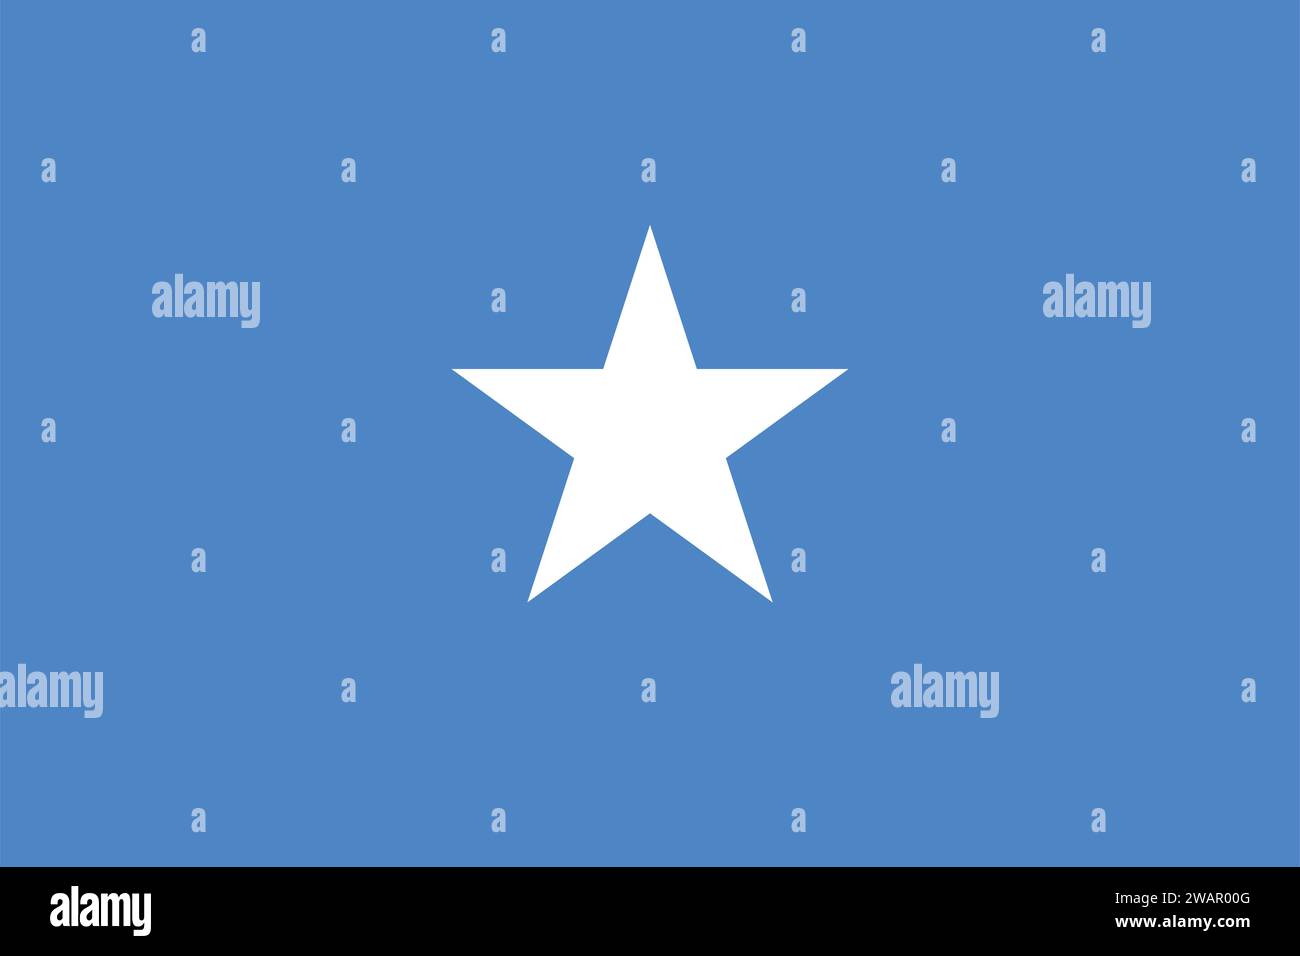 High detailed flag of Somalia. National Somalia flag. Africa. 3D illustration. Stock Vector